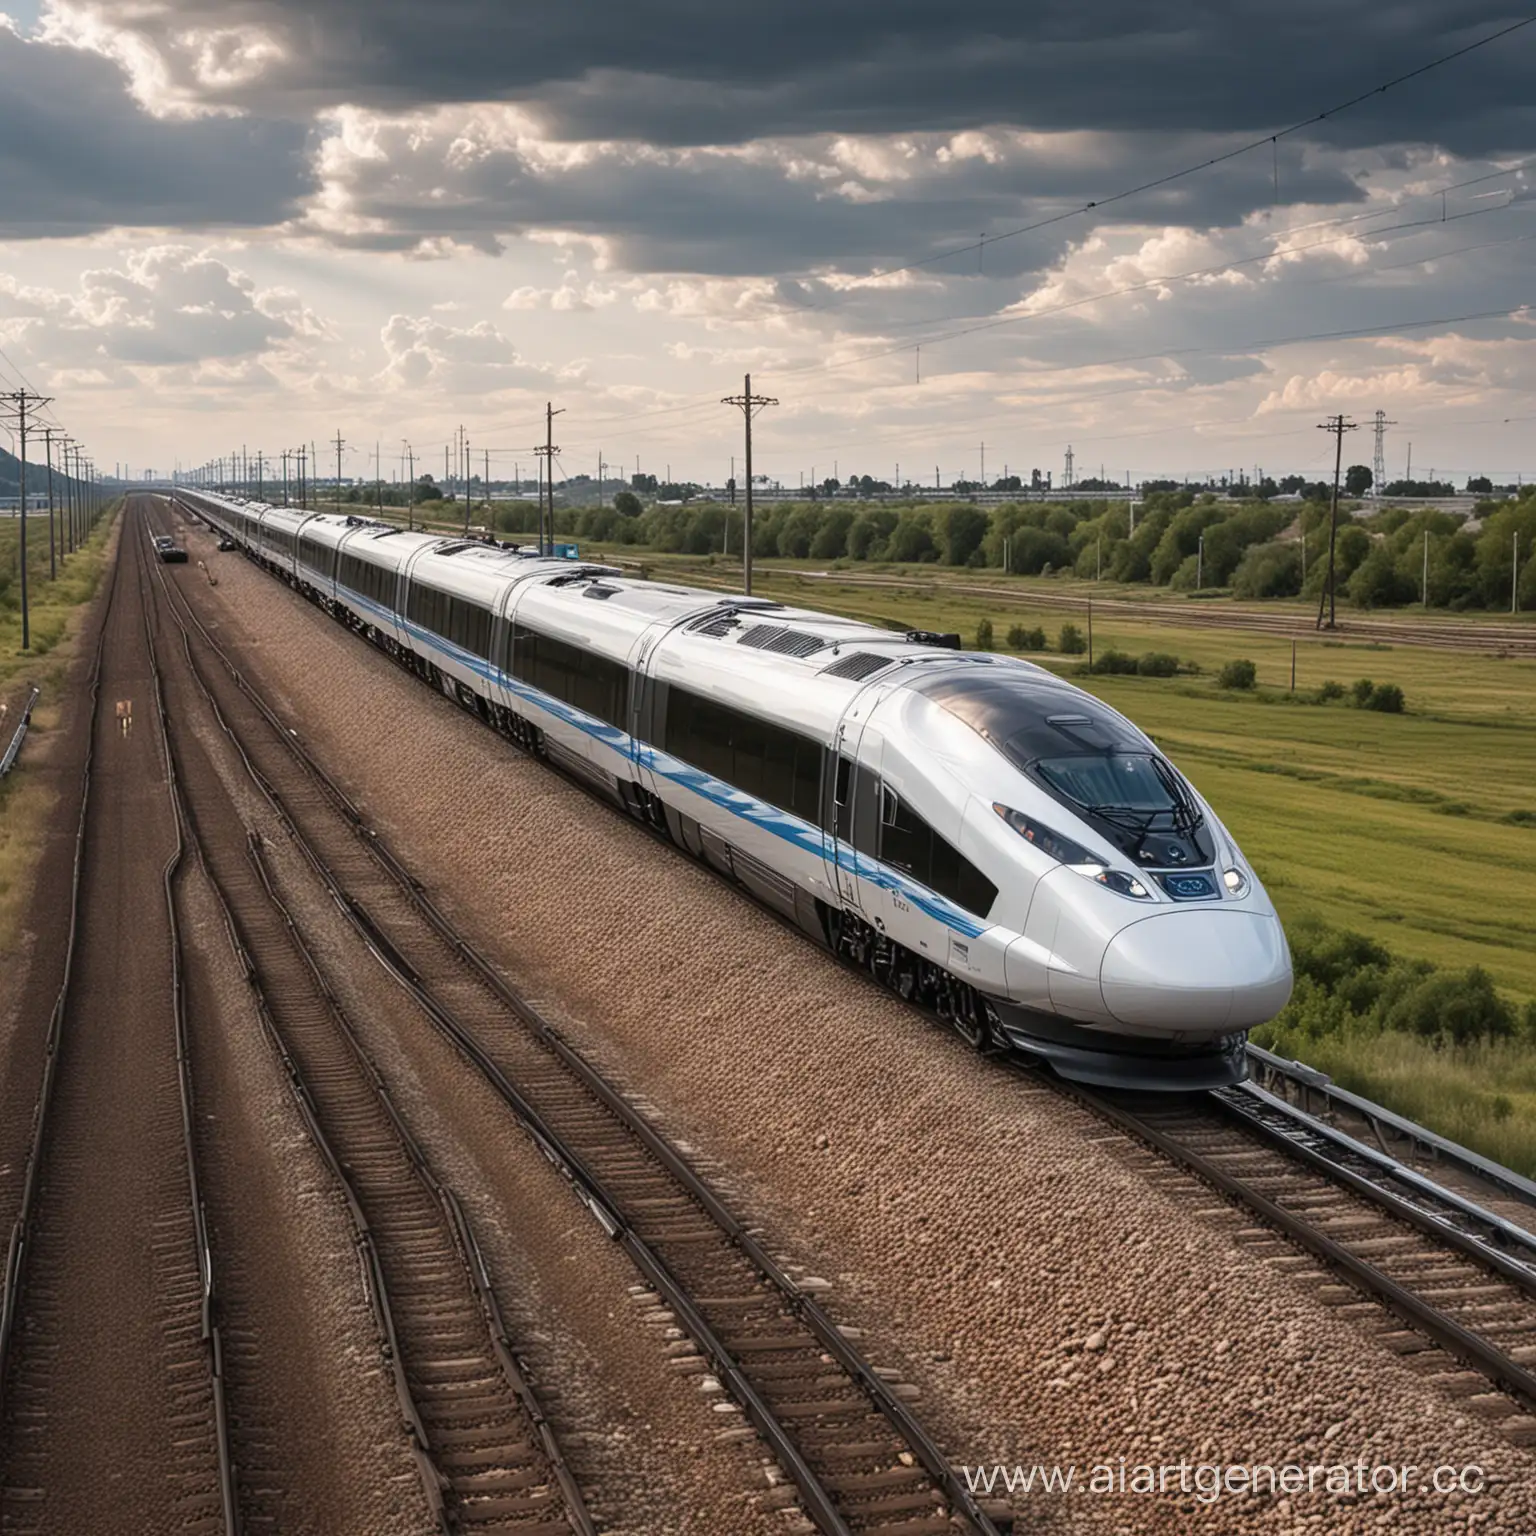 Futuristic-Train-Journey-Exploring-Tomorrows-Railroad